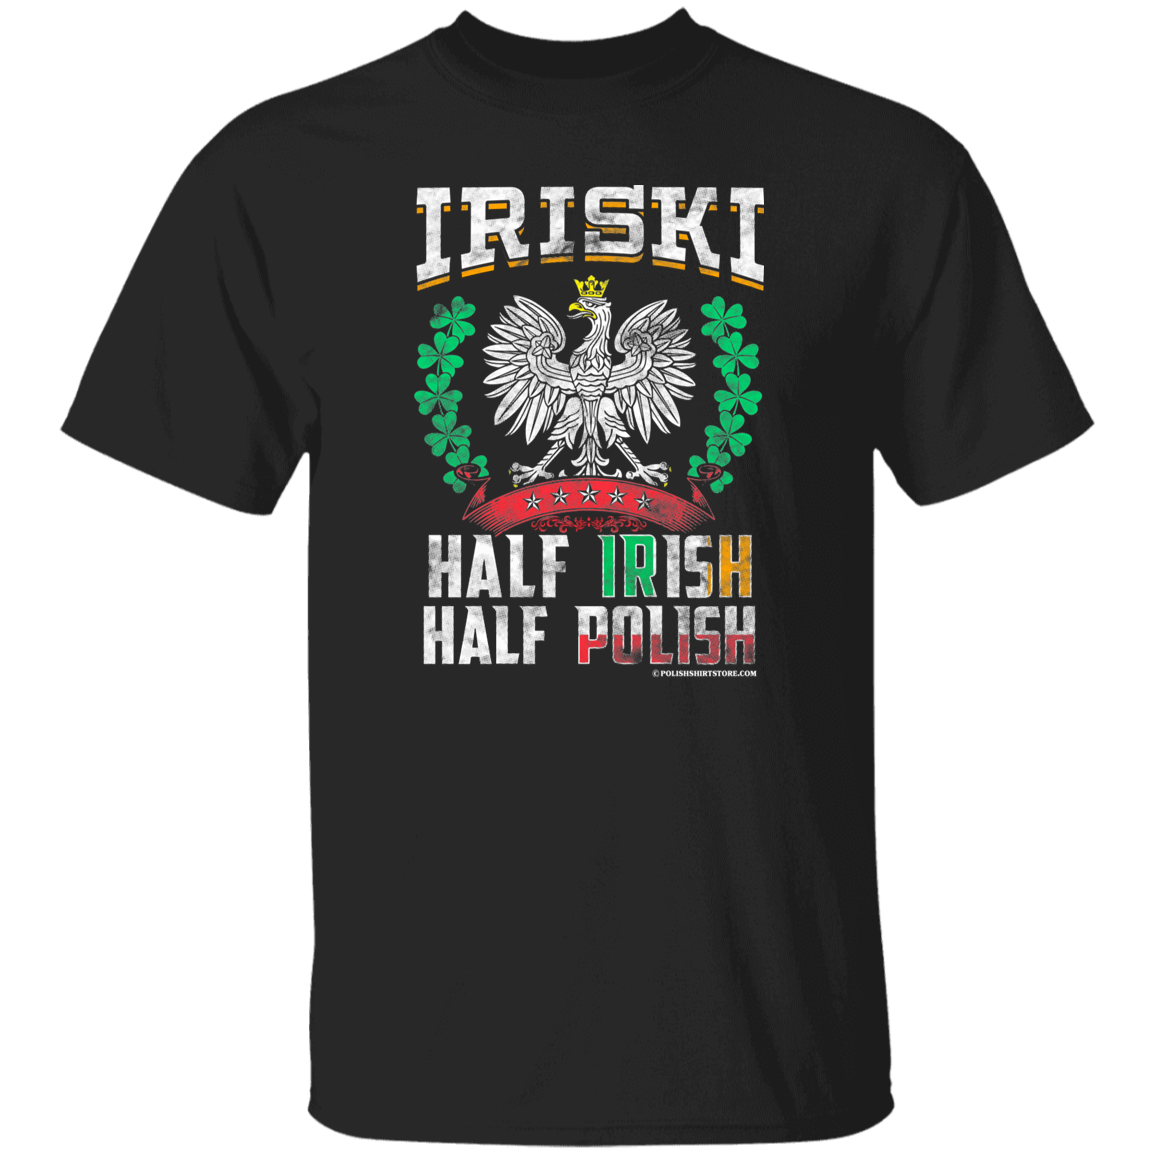 Iriski Half Irish Half Polish Apparel CustomCat G500 5.3 oz. T-Shirt Black S